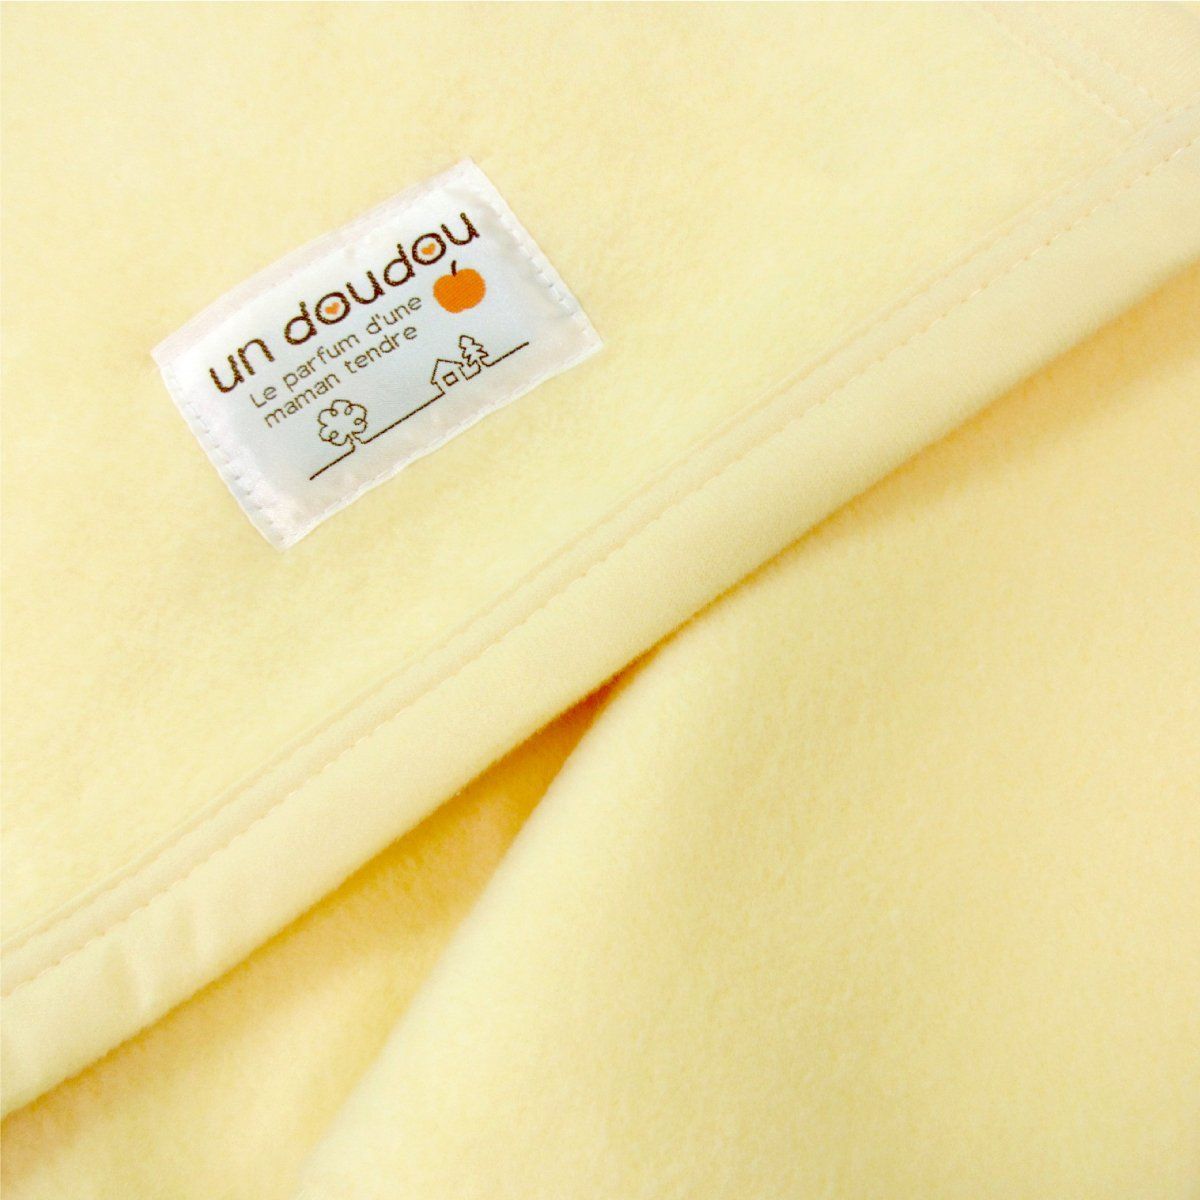 ☆お求めやすく価格改定☆ un doudou 日本製 ベビー 綿毛布 85×115cm 無地 綿100% クリーム 1321-CR 